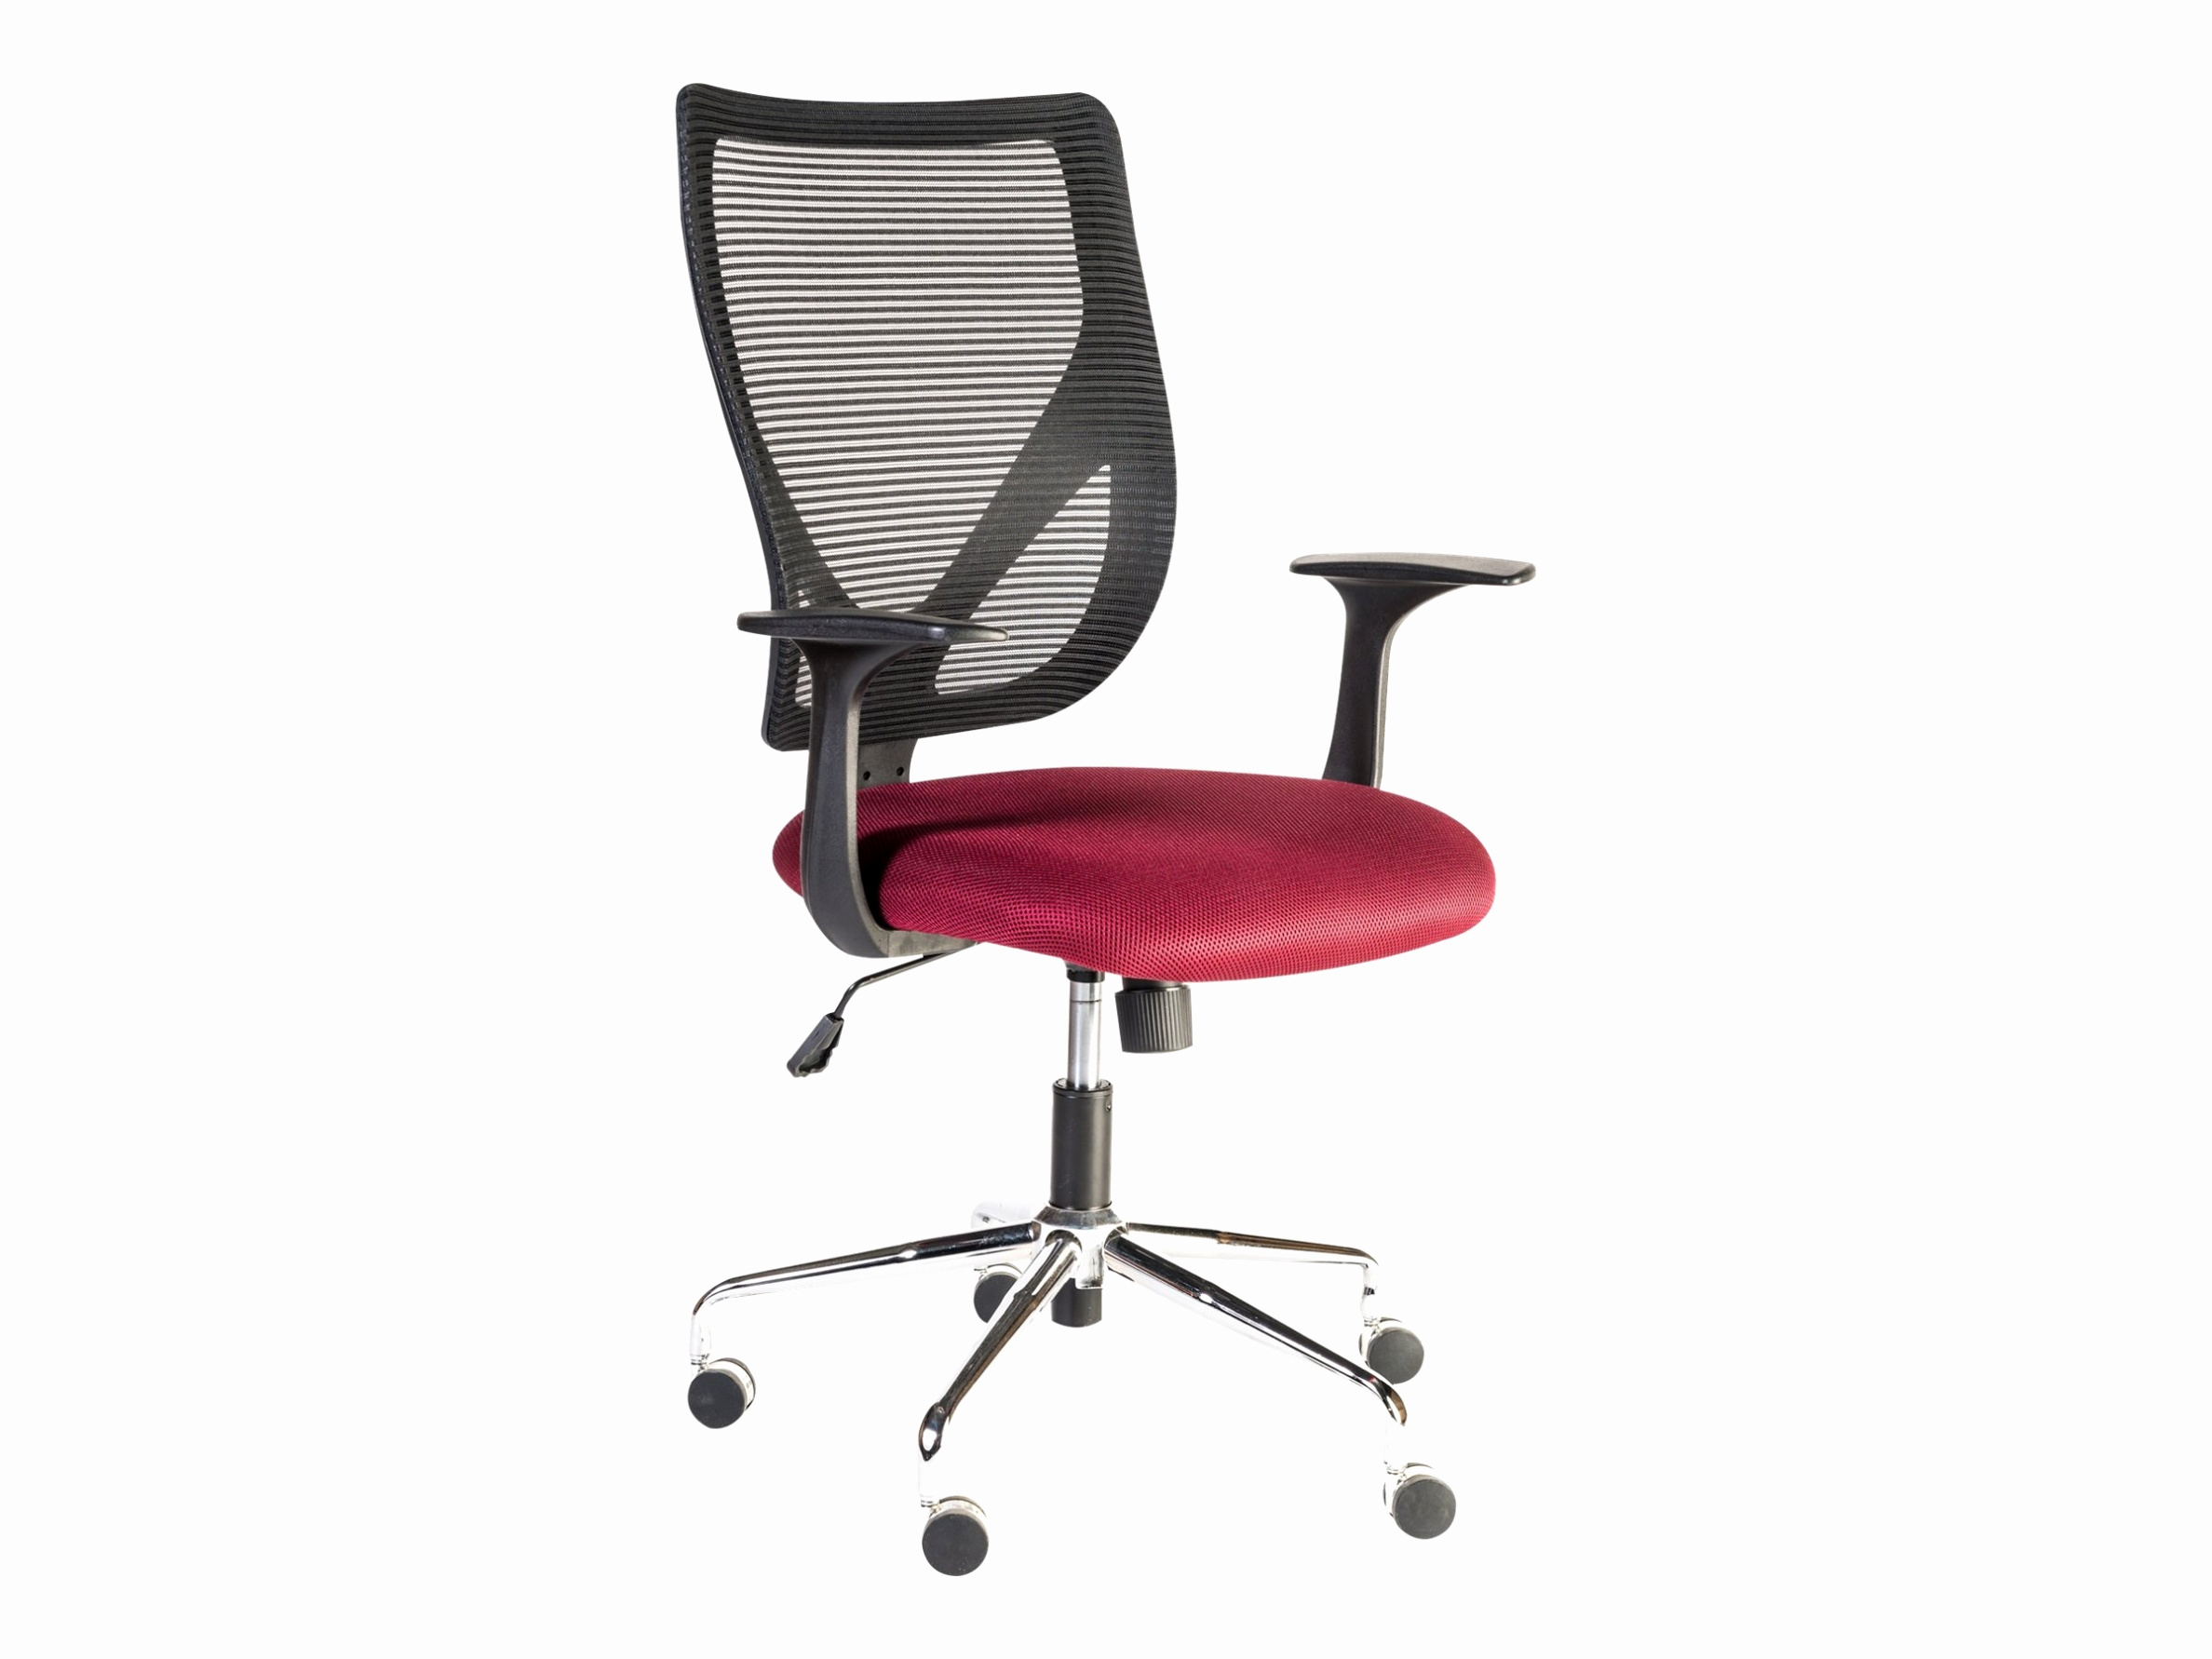 meilleur fauteuil gamer source dinspiration fauteuil de bureau rouge meilleur chaise rouge but chaise rouge 0d of meilleur fauteuil gamer